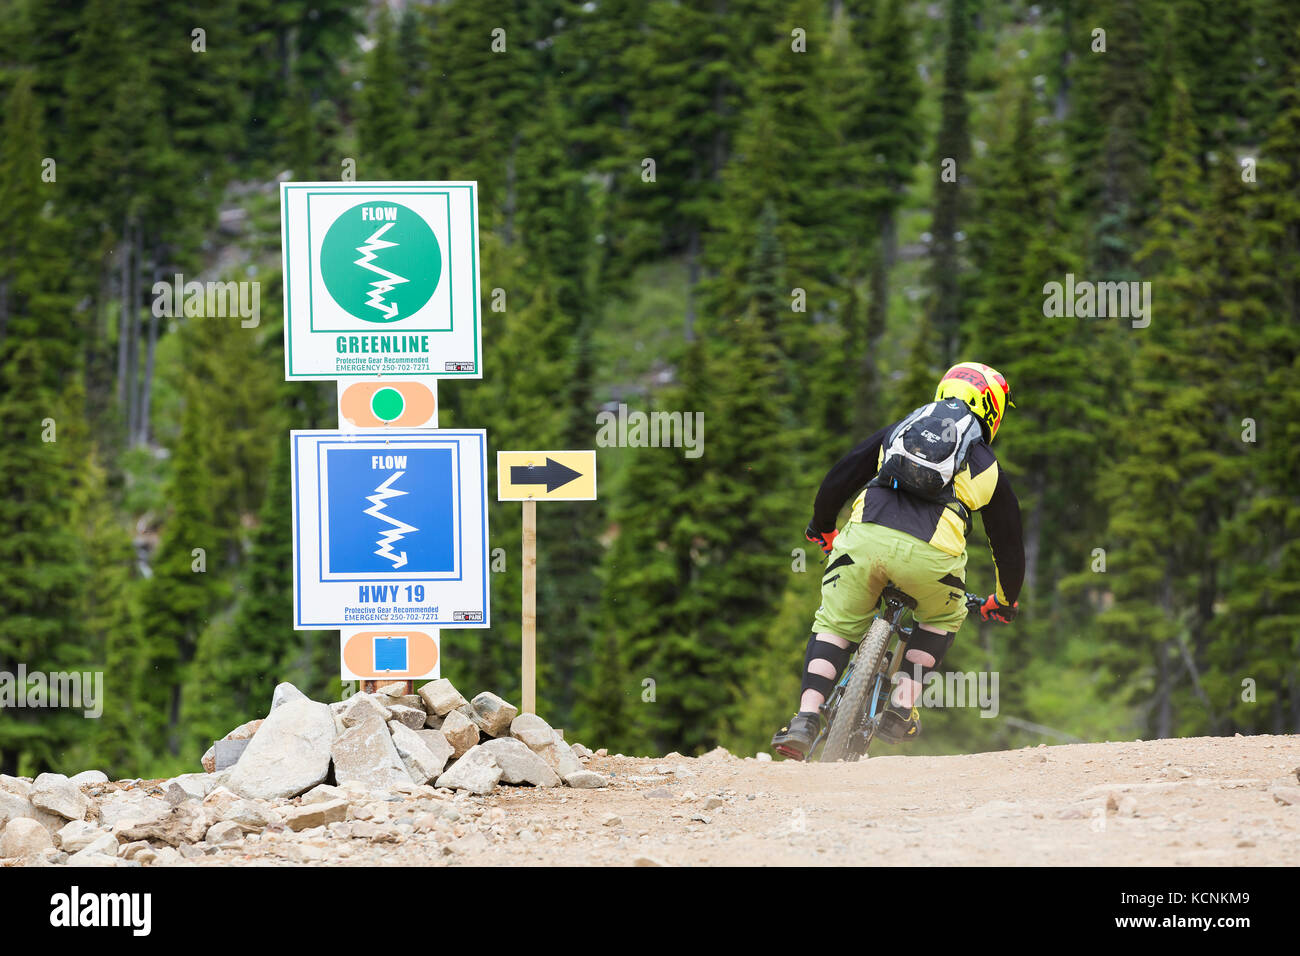 Beschilderung für die Richtung und den Schwierigkeitsgrad des Radweges am Mt. Washington, Comox Valley, Vancouver Island, British Columbia, Kanada Stockfoto